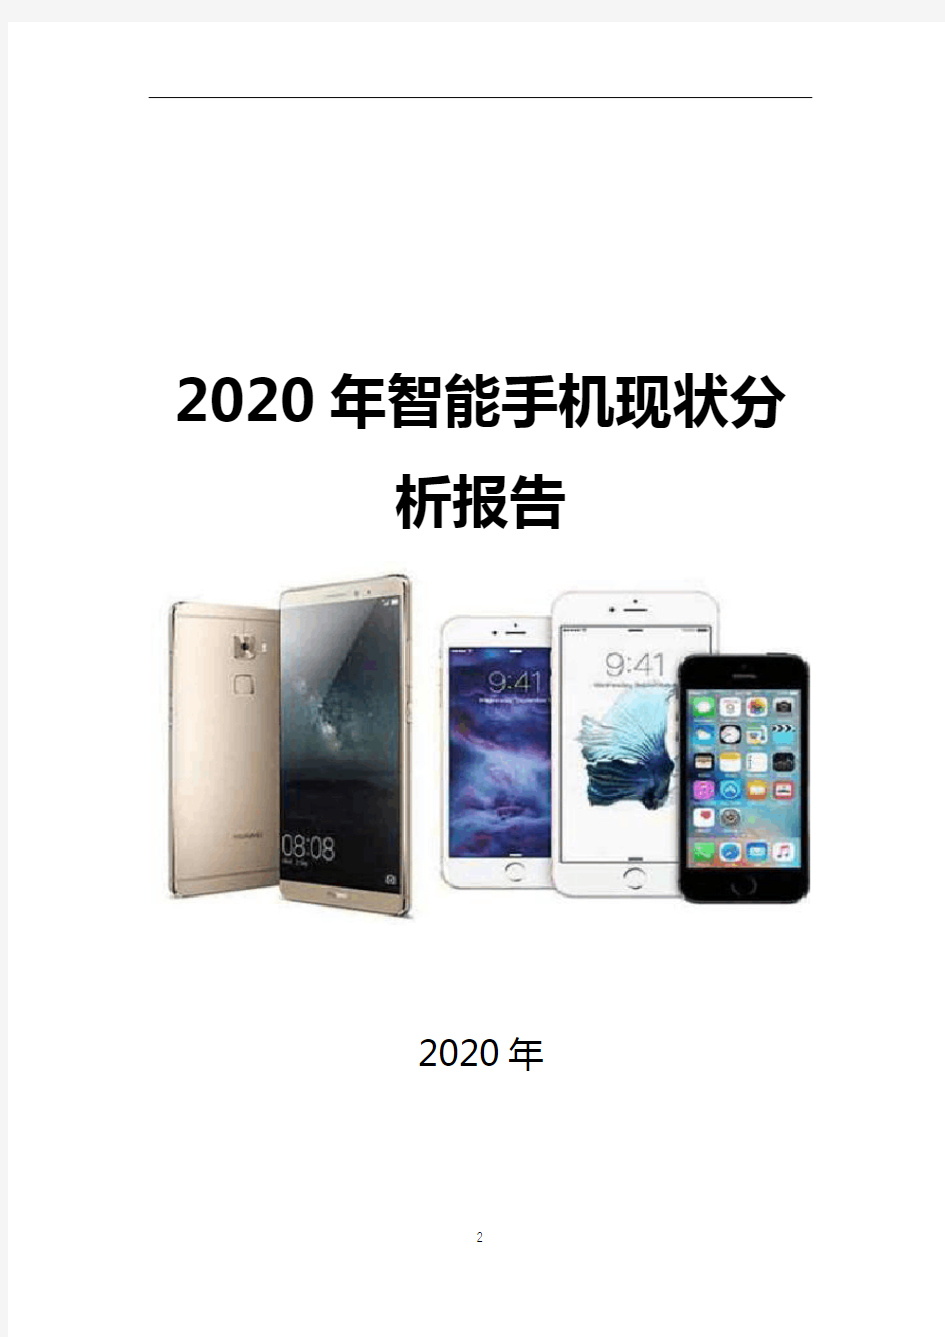 2020年智能手机行业现状分析报告